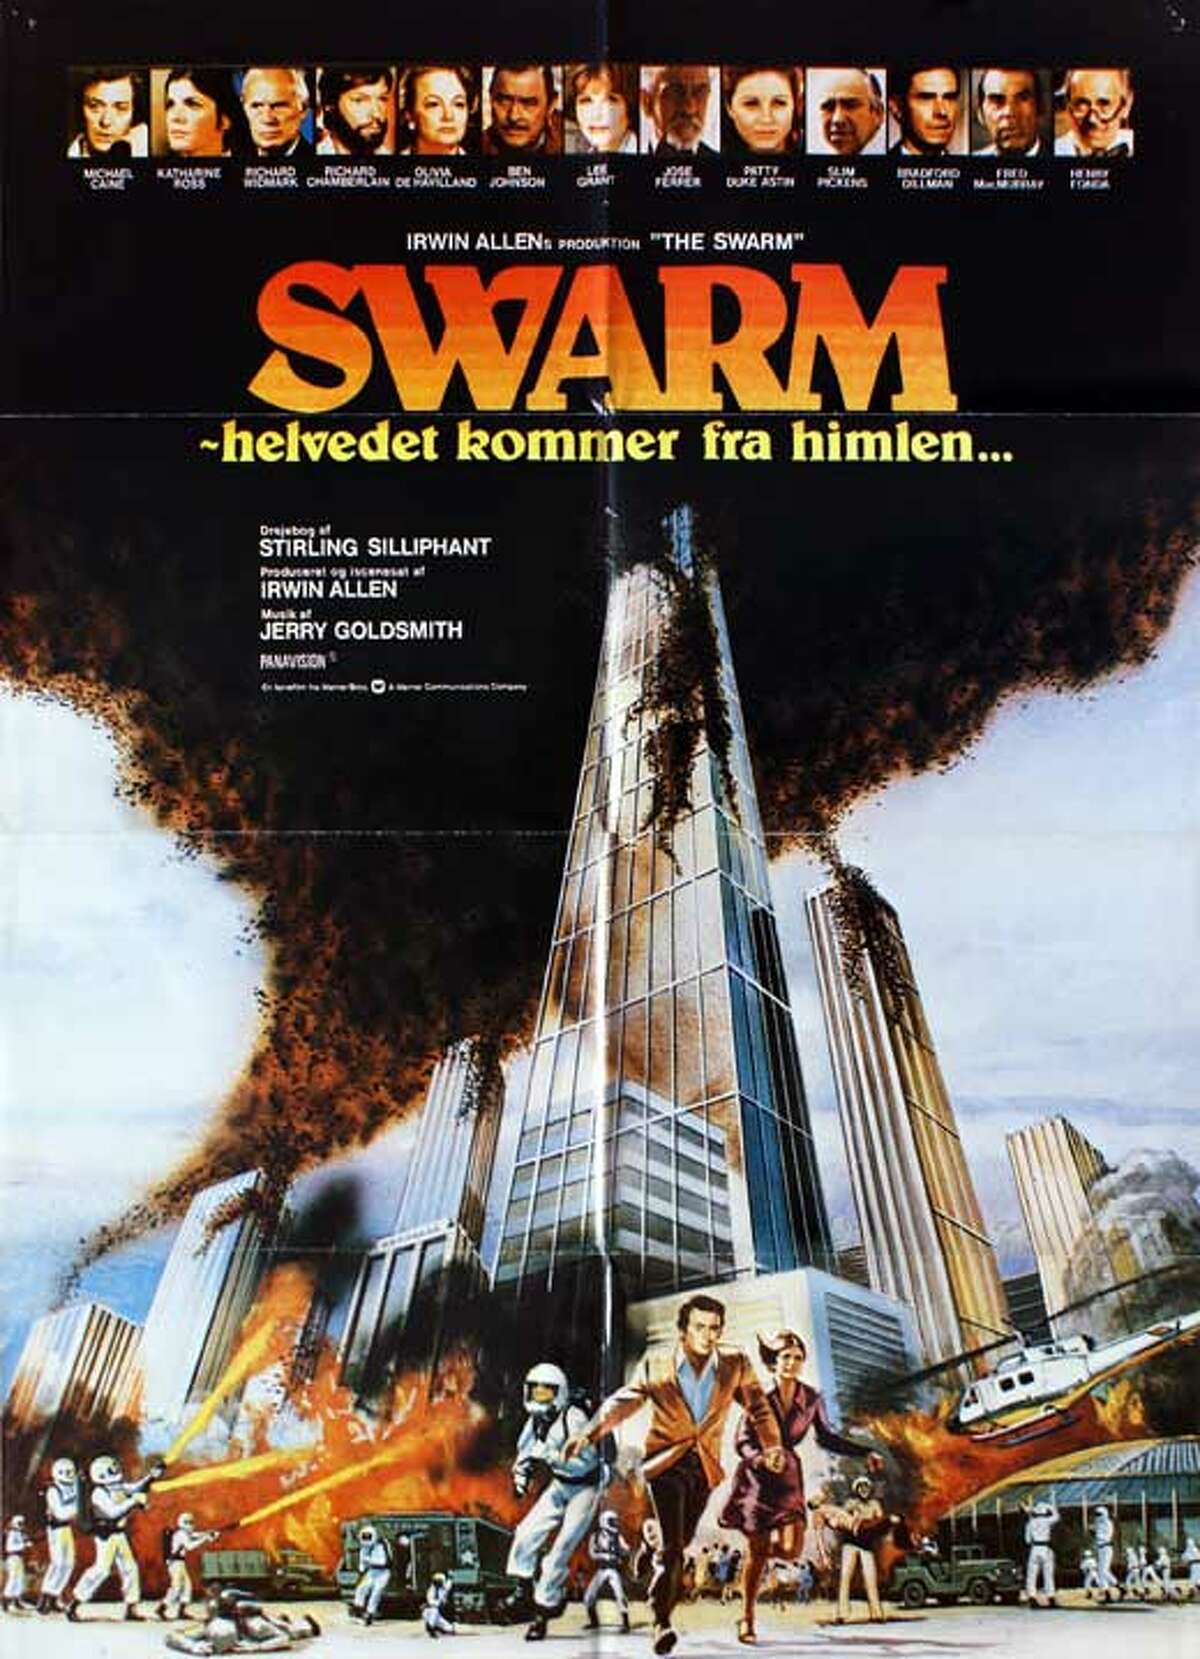 The Swarm 1978